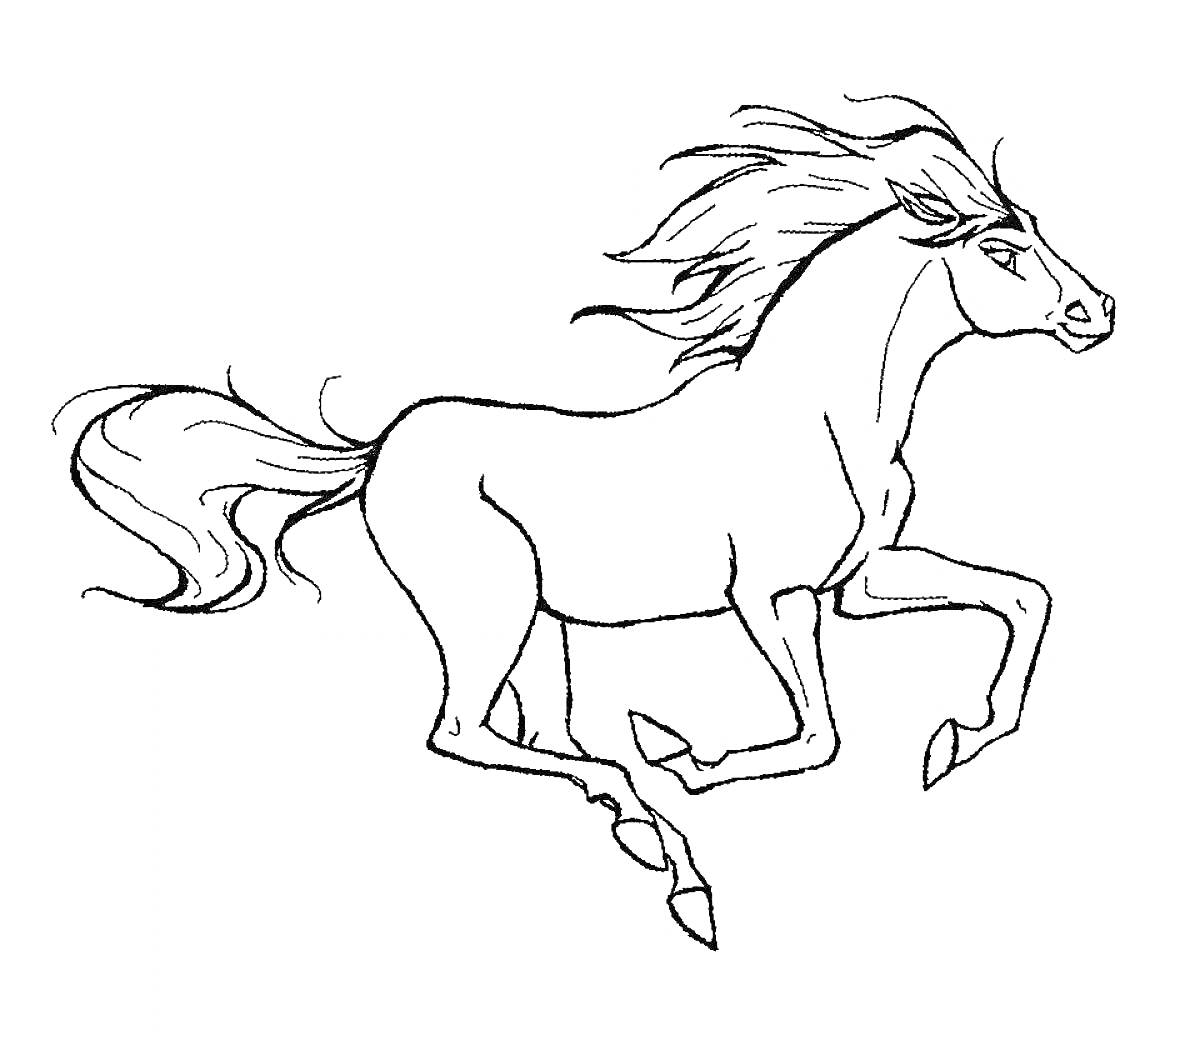 Раскраска Скачущая лошадь с развевающейся гривой и хвостом